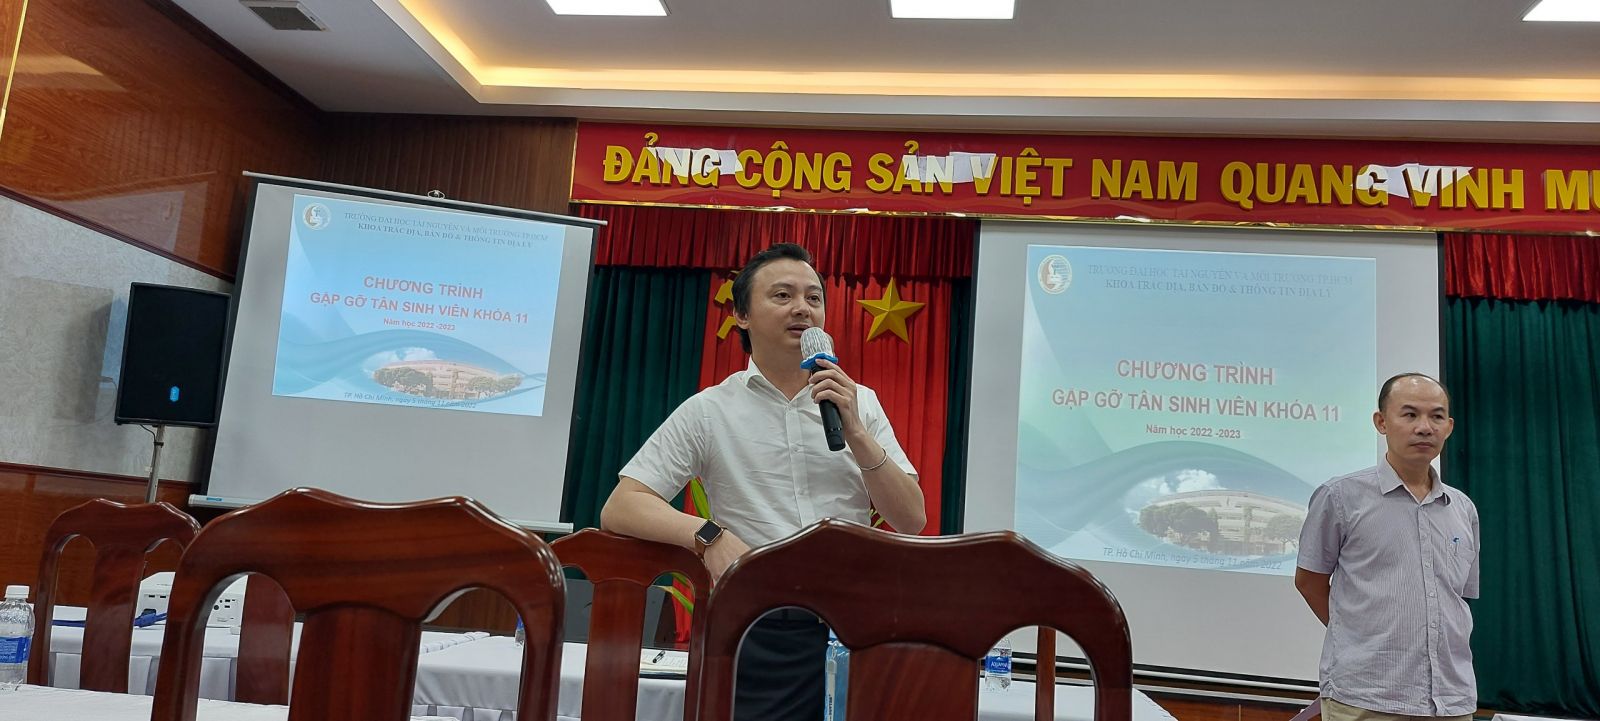 ThS. Lê Quang Nam - Phó viện trưởng Giám đốc chi nhánh Miền Nam